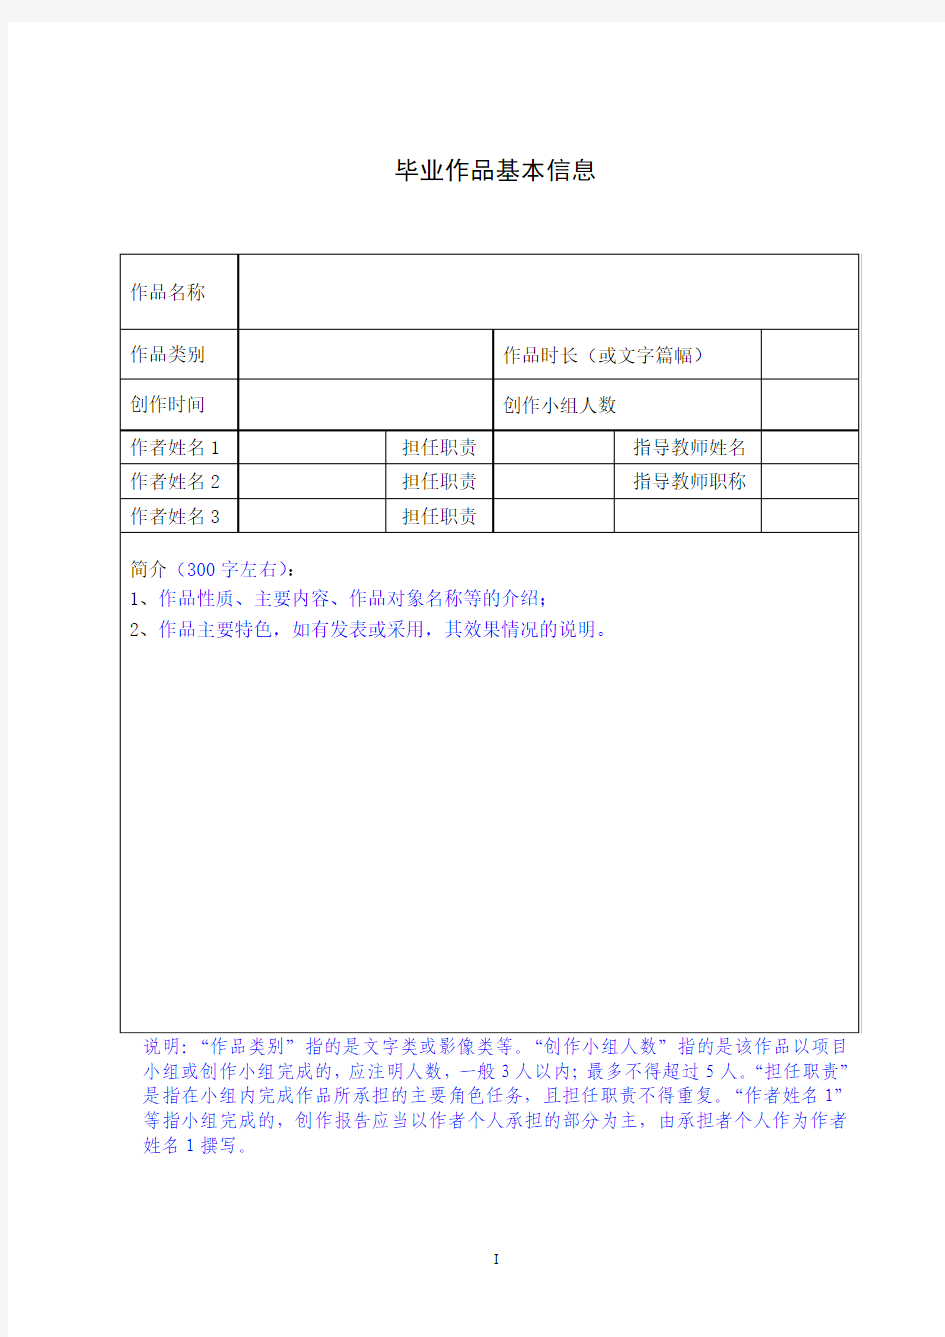 【第三部分】二、《中国传媒大学南广学院本科毕业创作报告》模板